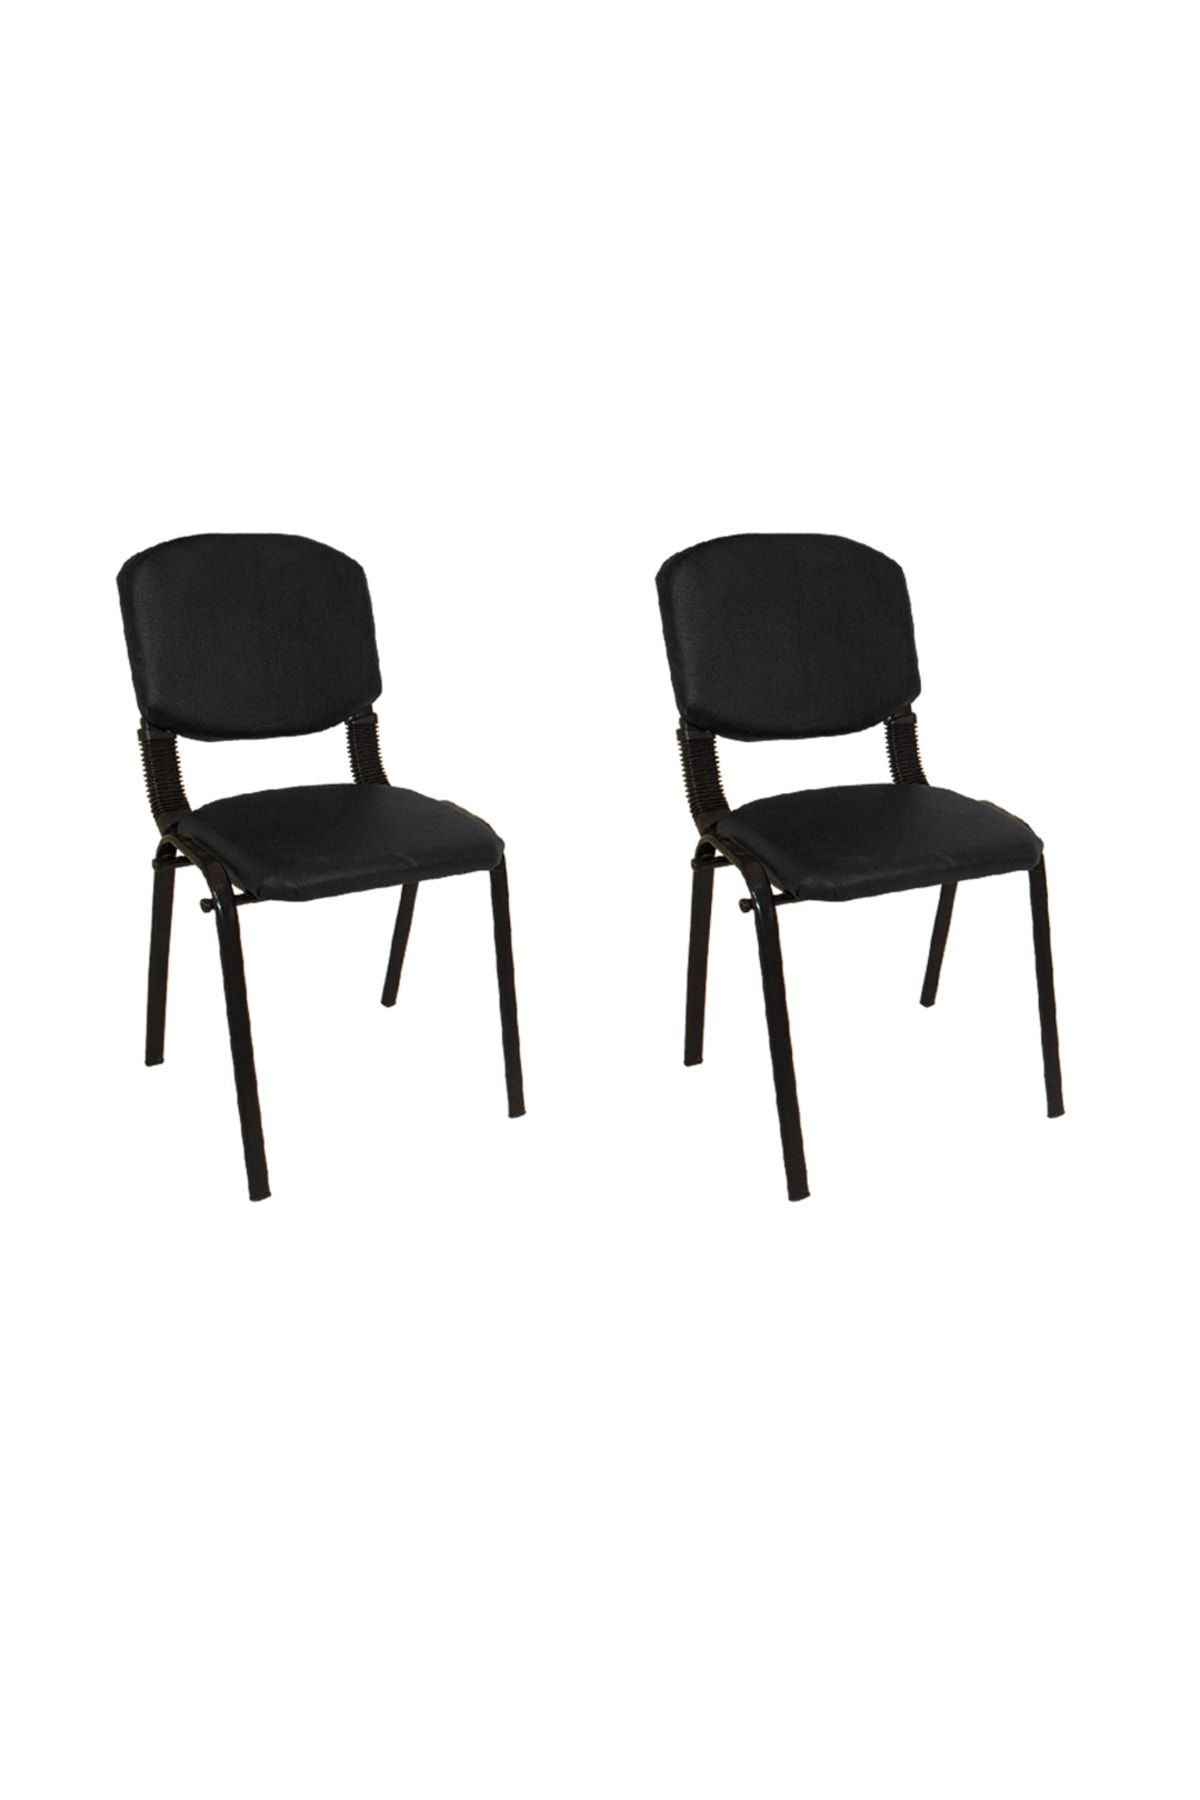 Dockers Form Ofis Ve Toplantı Sandalyesi (2 Adet) - Siyah